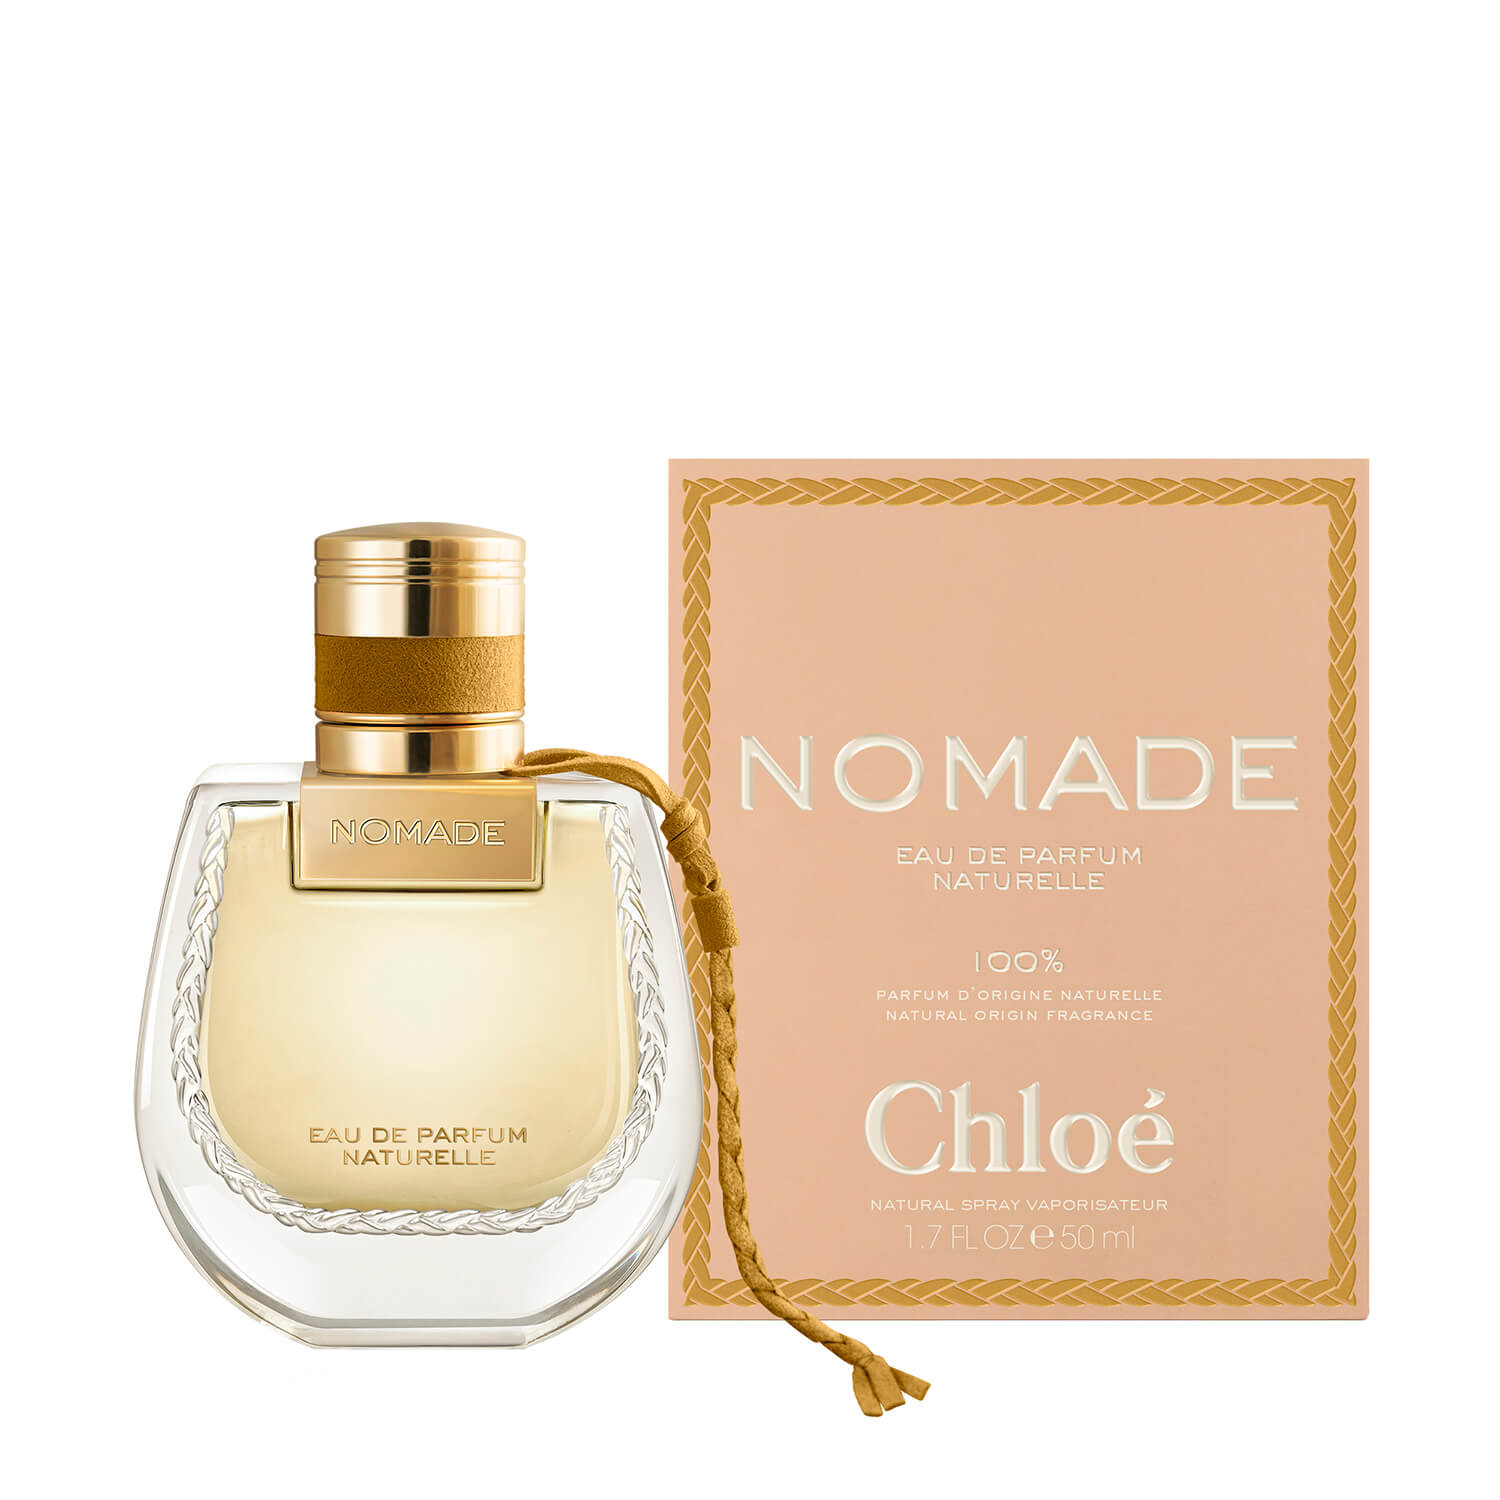 Chloe Nomade Eau de Parfum Naturelle 2 Shaws Department Stores